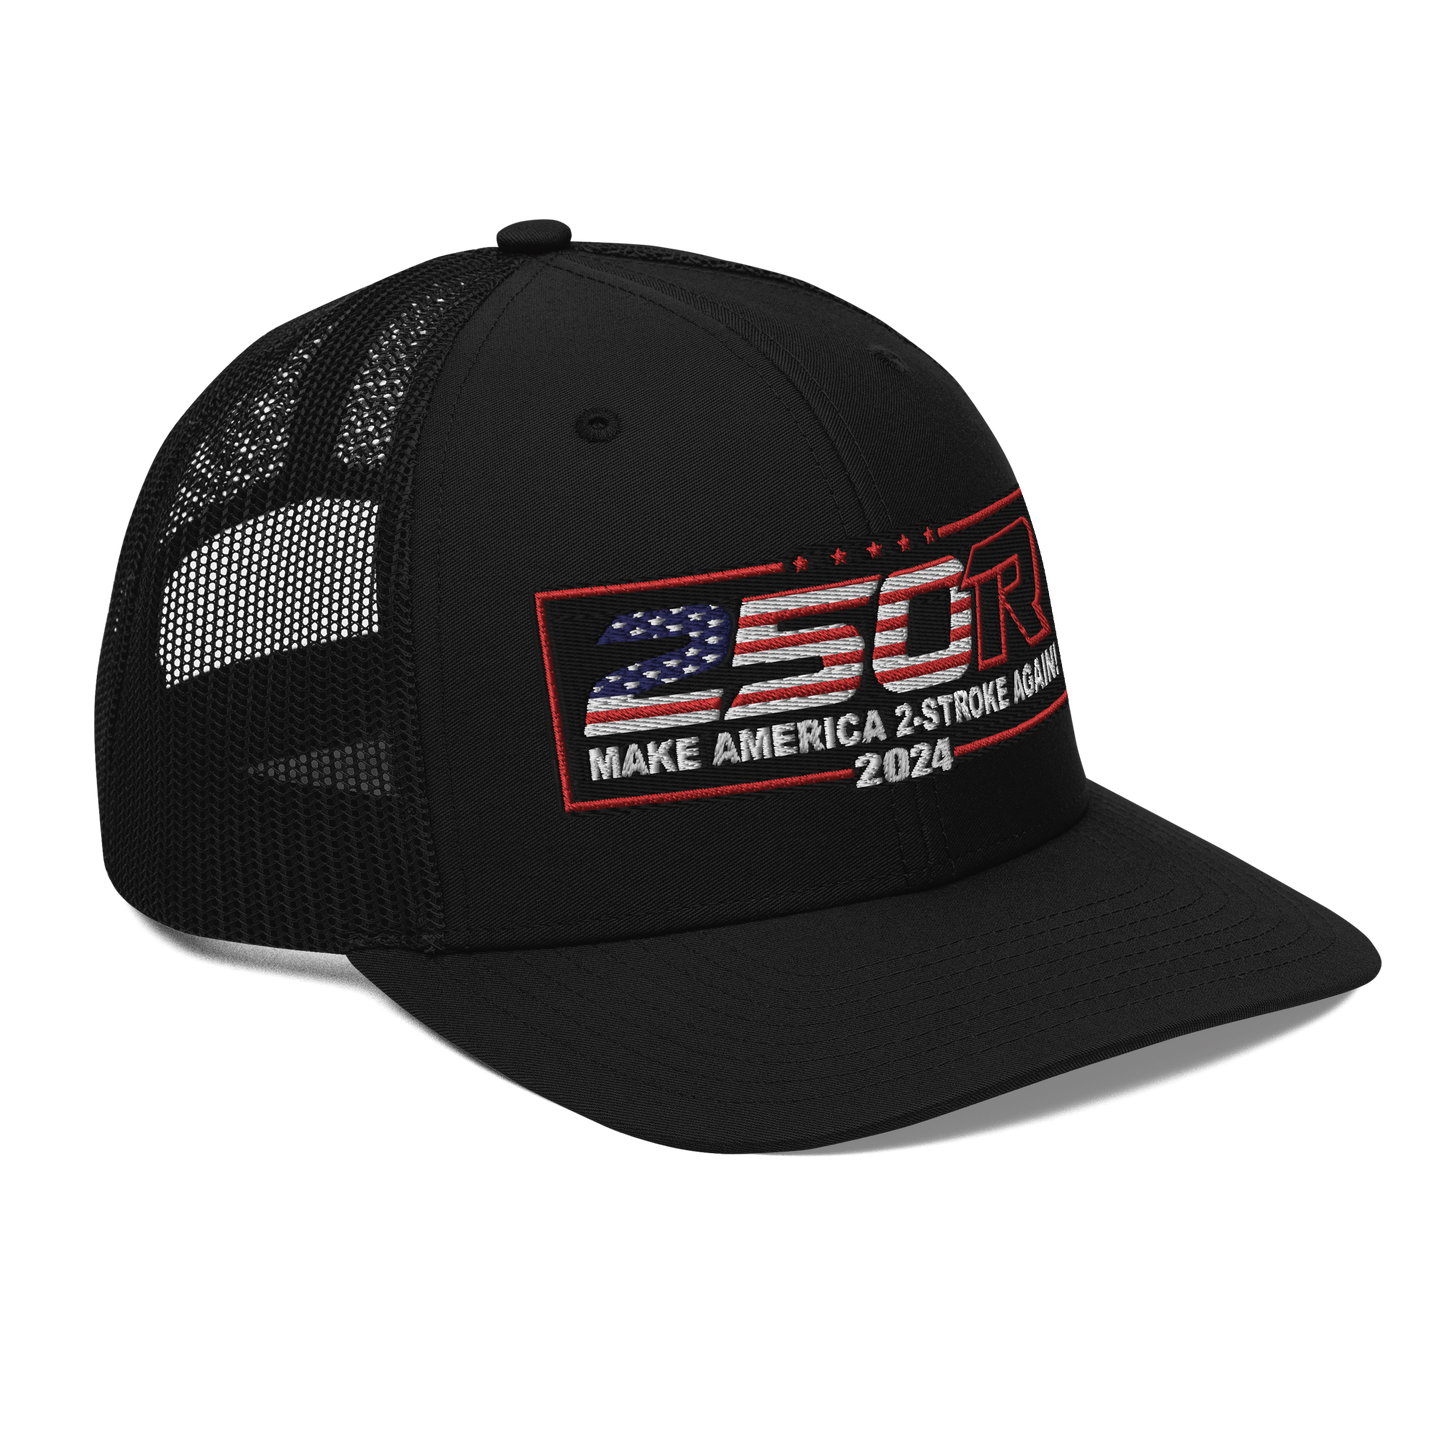 Make America 2-Stroke Again 2024 Flag Richardson Hat